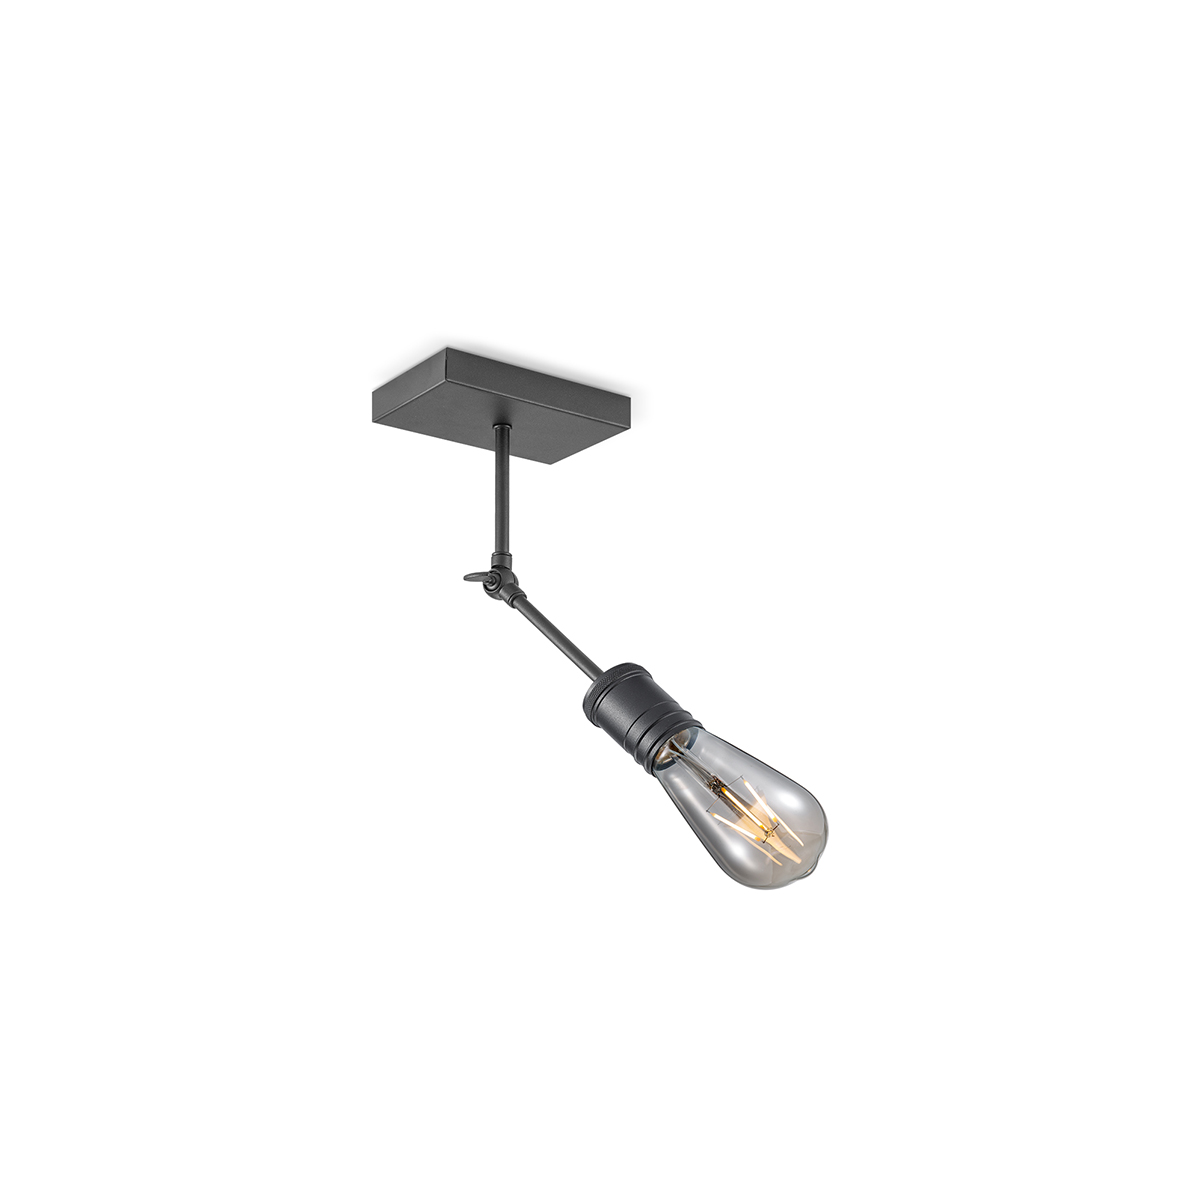 Tangla lighting - TLS7000-01SB - Spotlight 1 Light - metal - sand black - extend Spot - E27